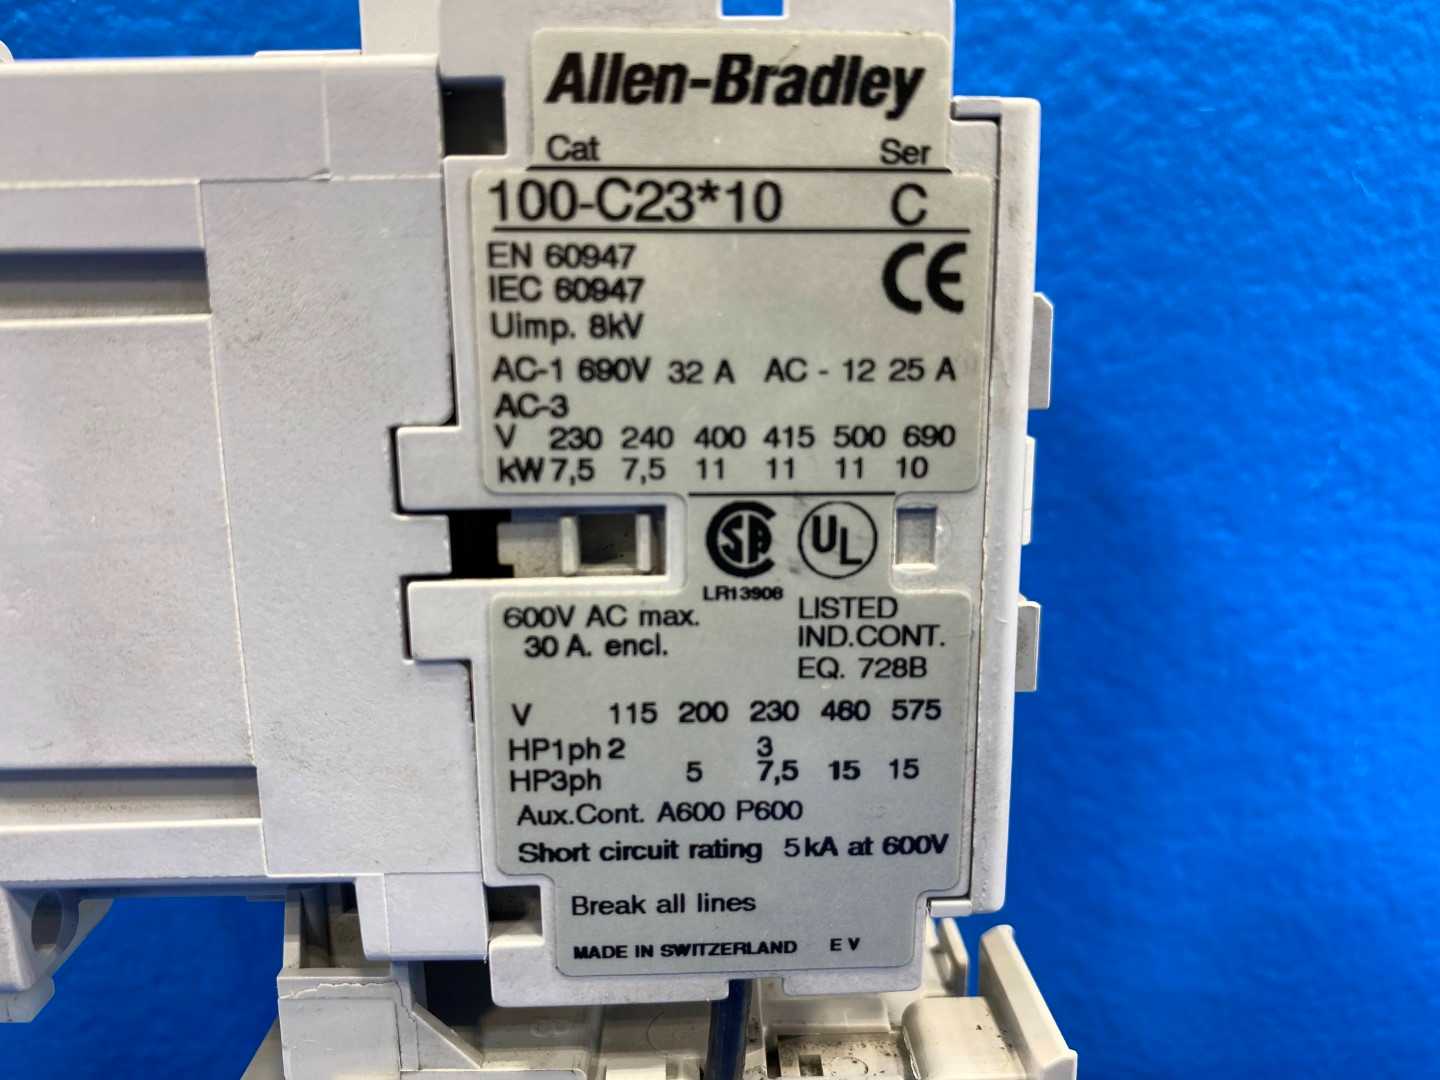 Allen-Bradley 100-C23*10 Standard IEC Contactor